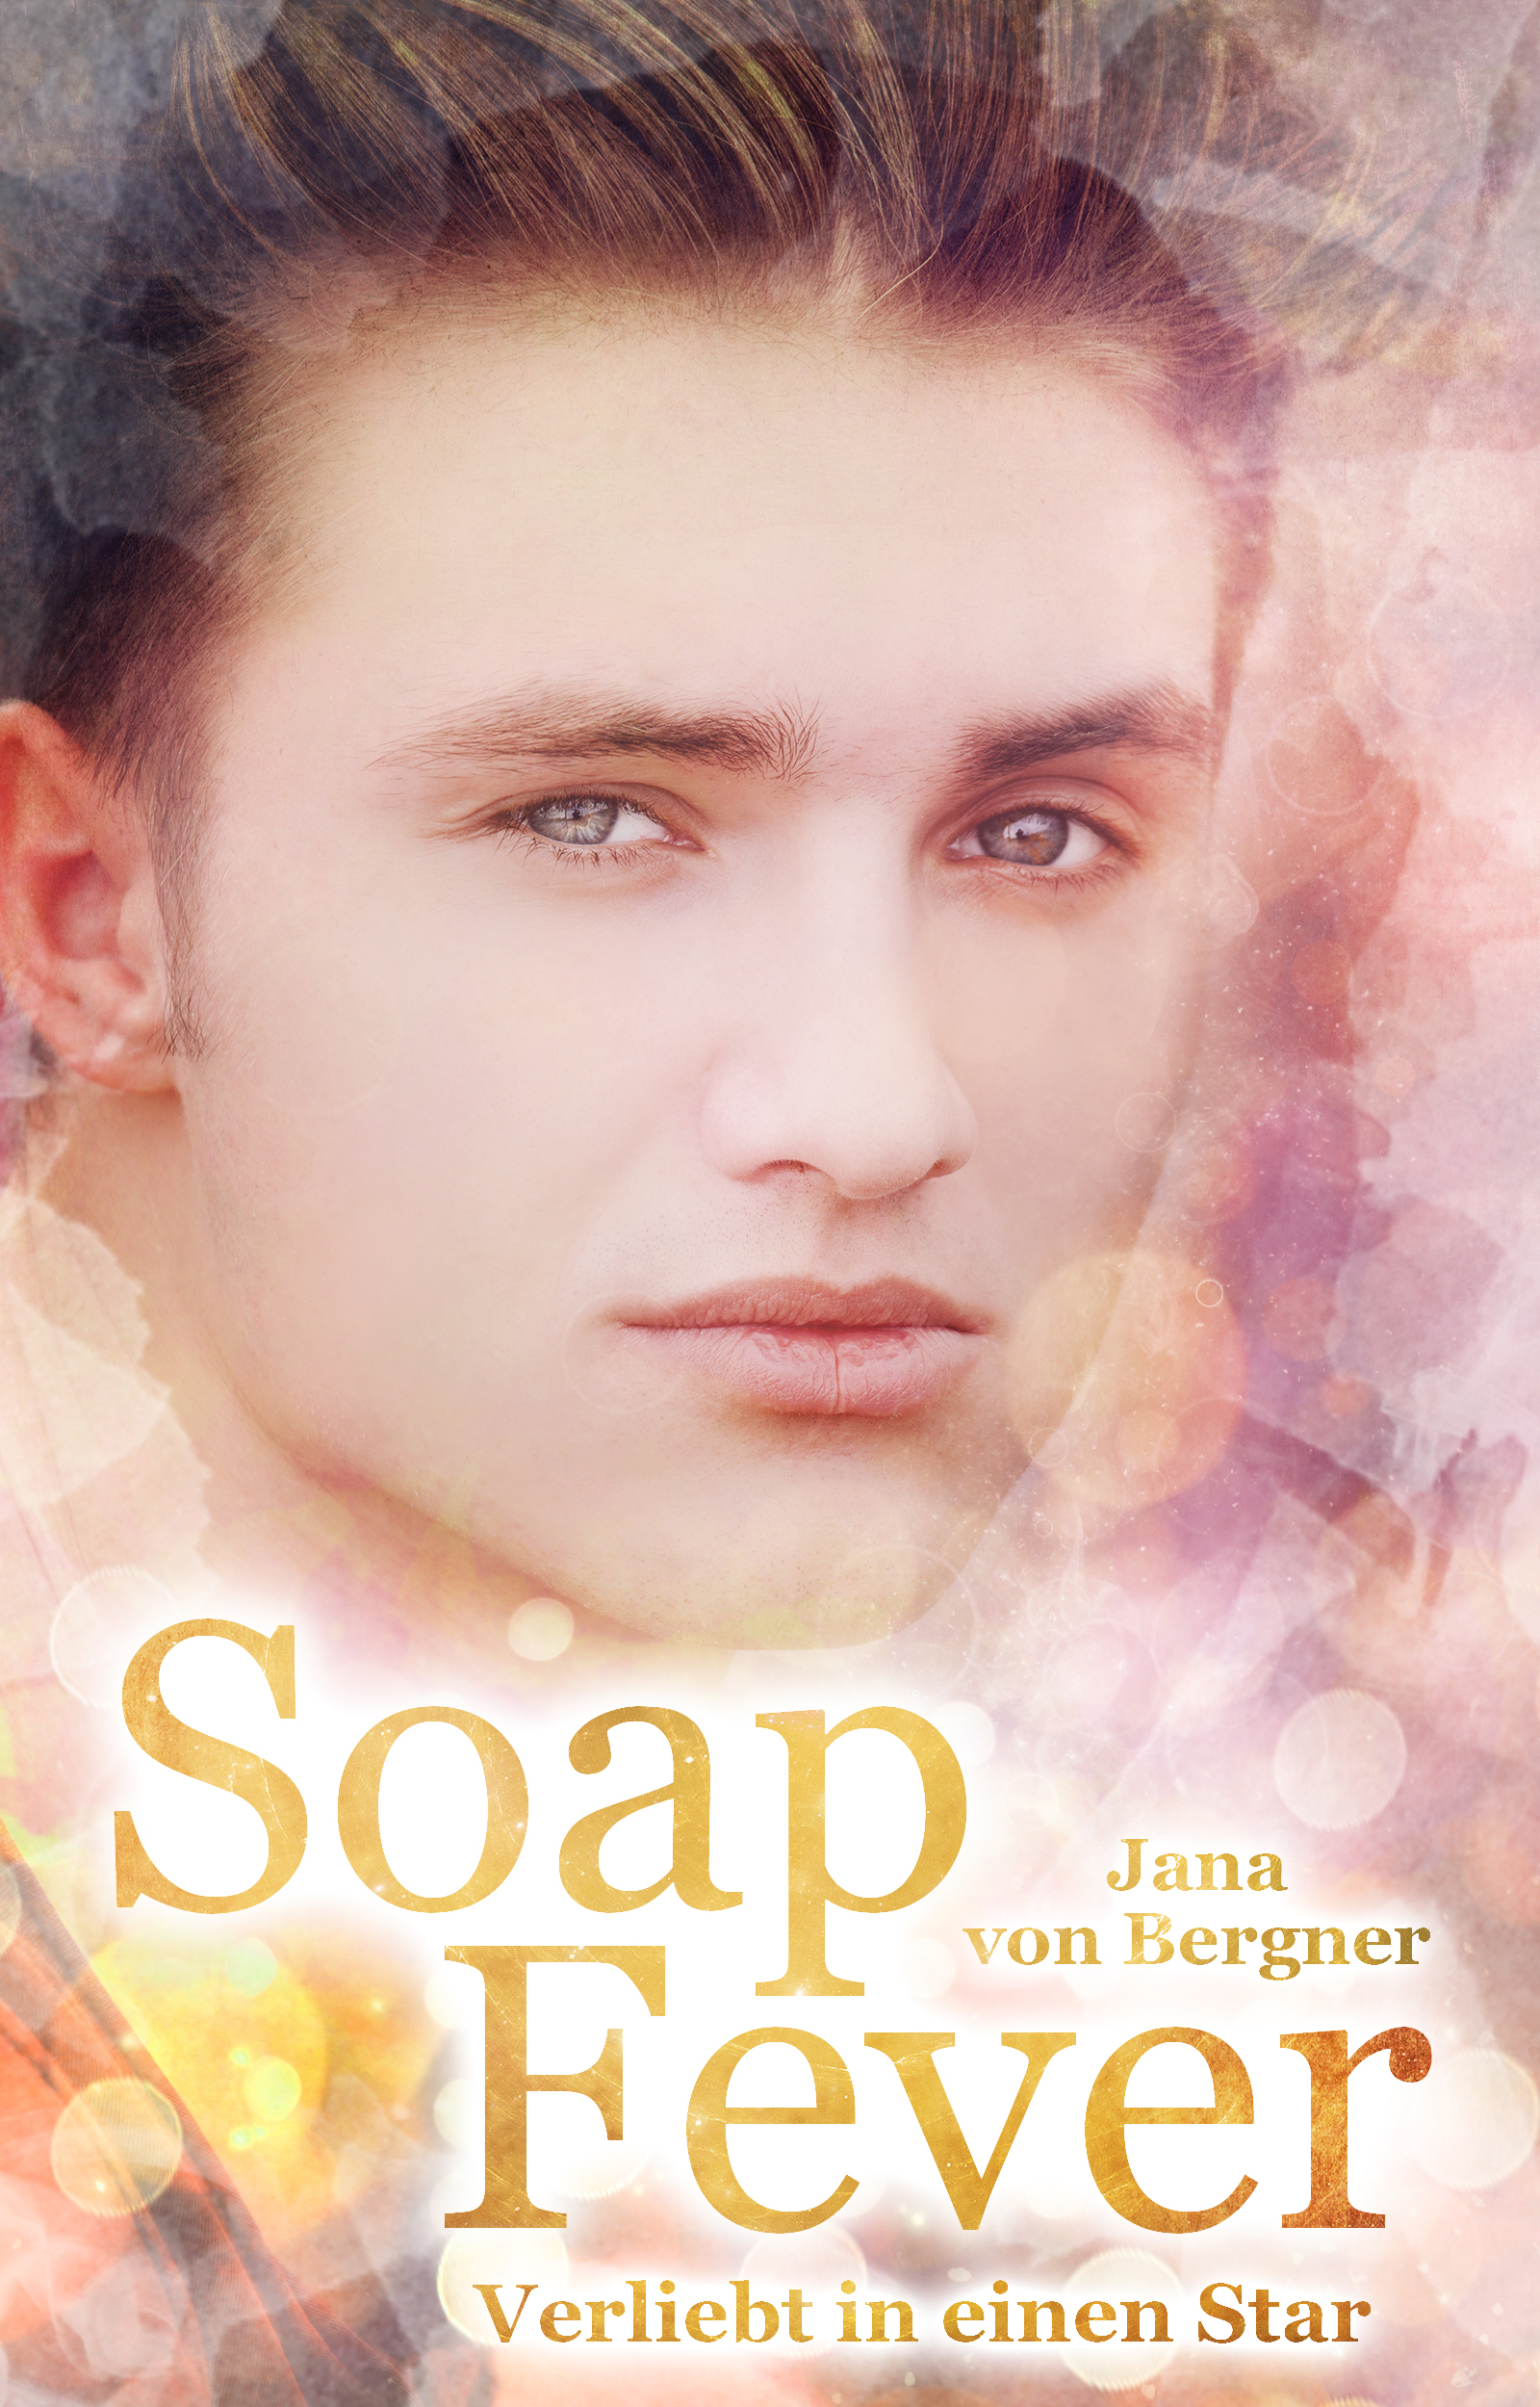 Soap Fever: Verliebt in einen Star